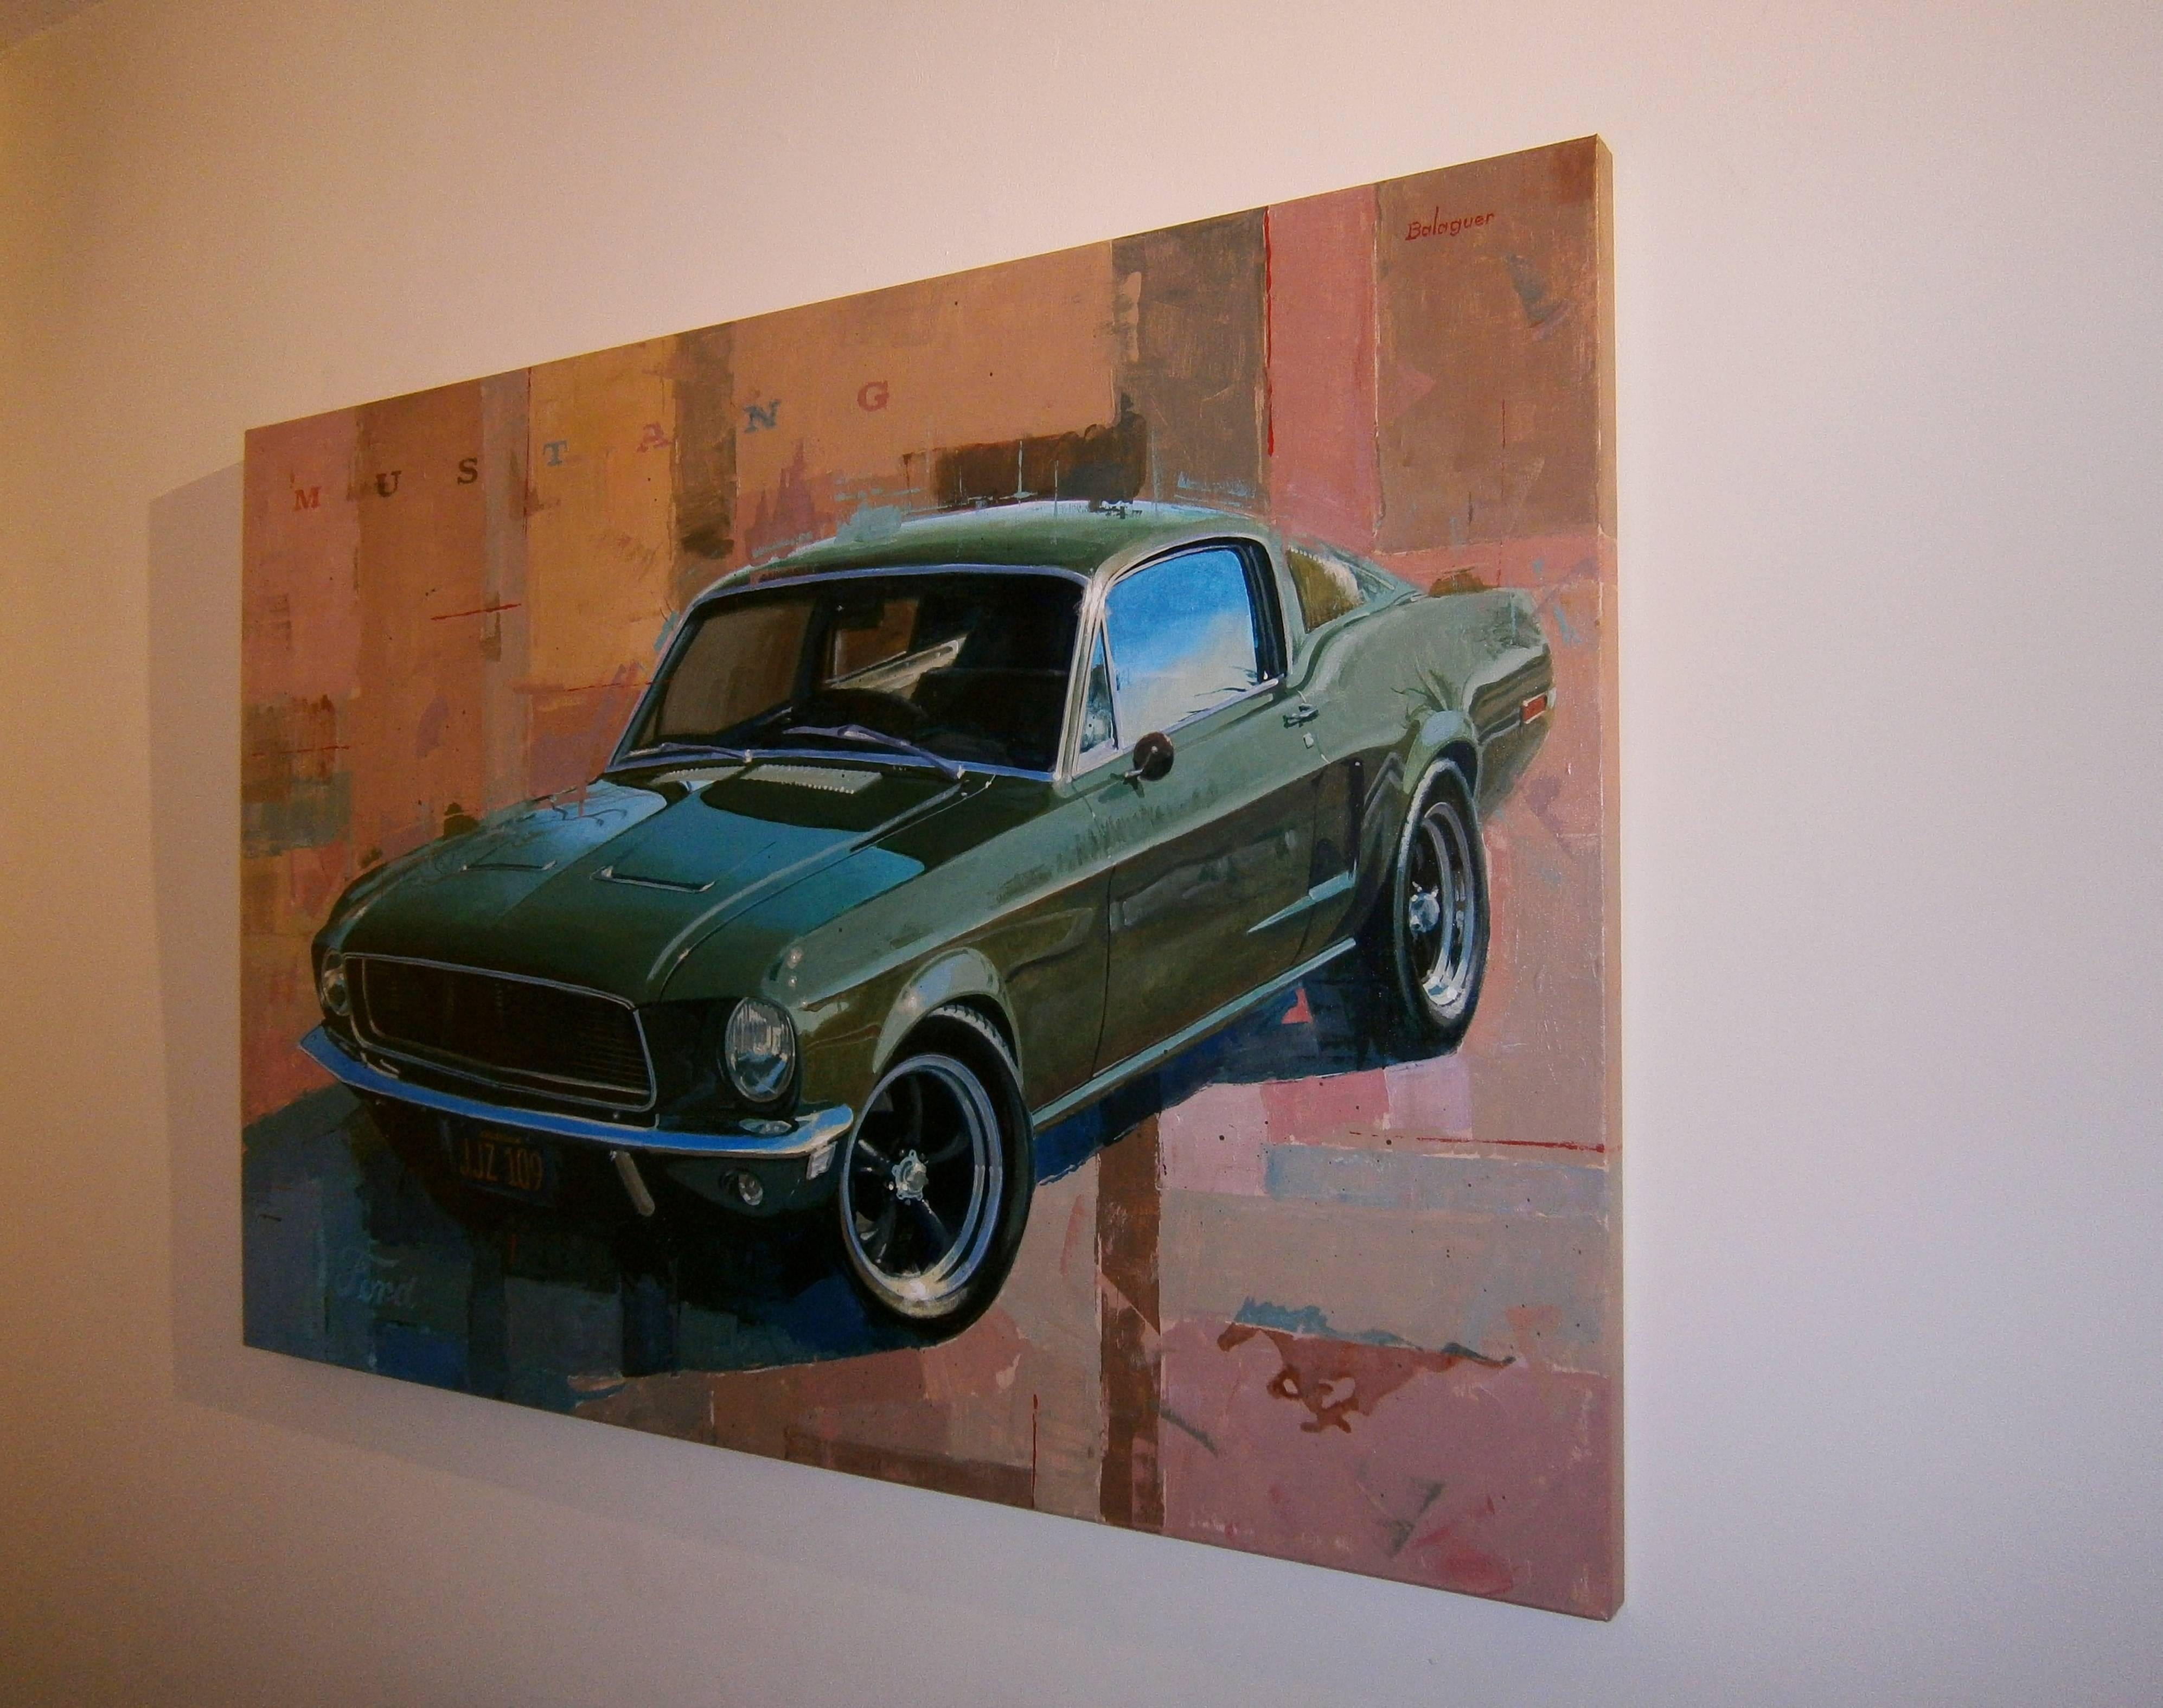  Balaguer   Classic Car original acrylic canvas painting - Painting by Alex BALAGUER